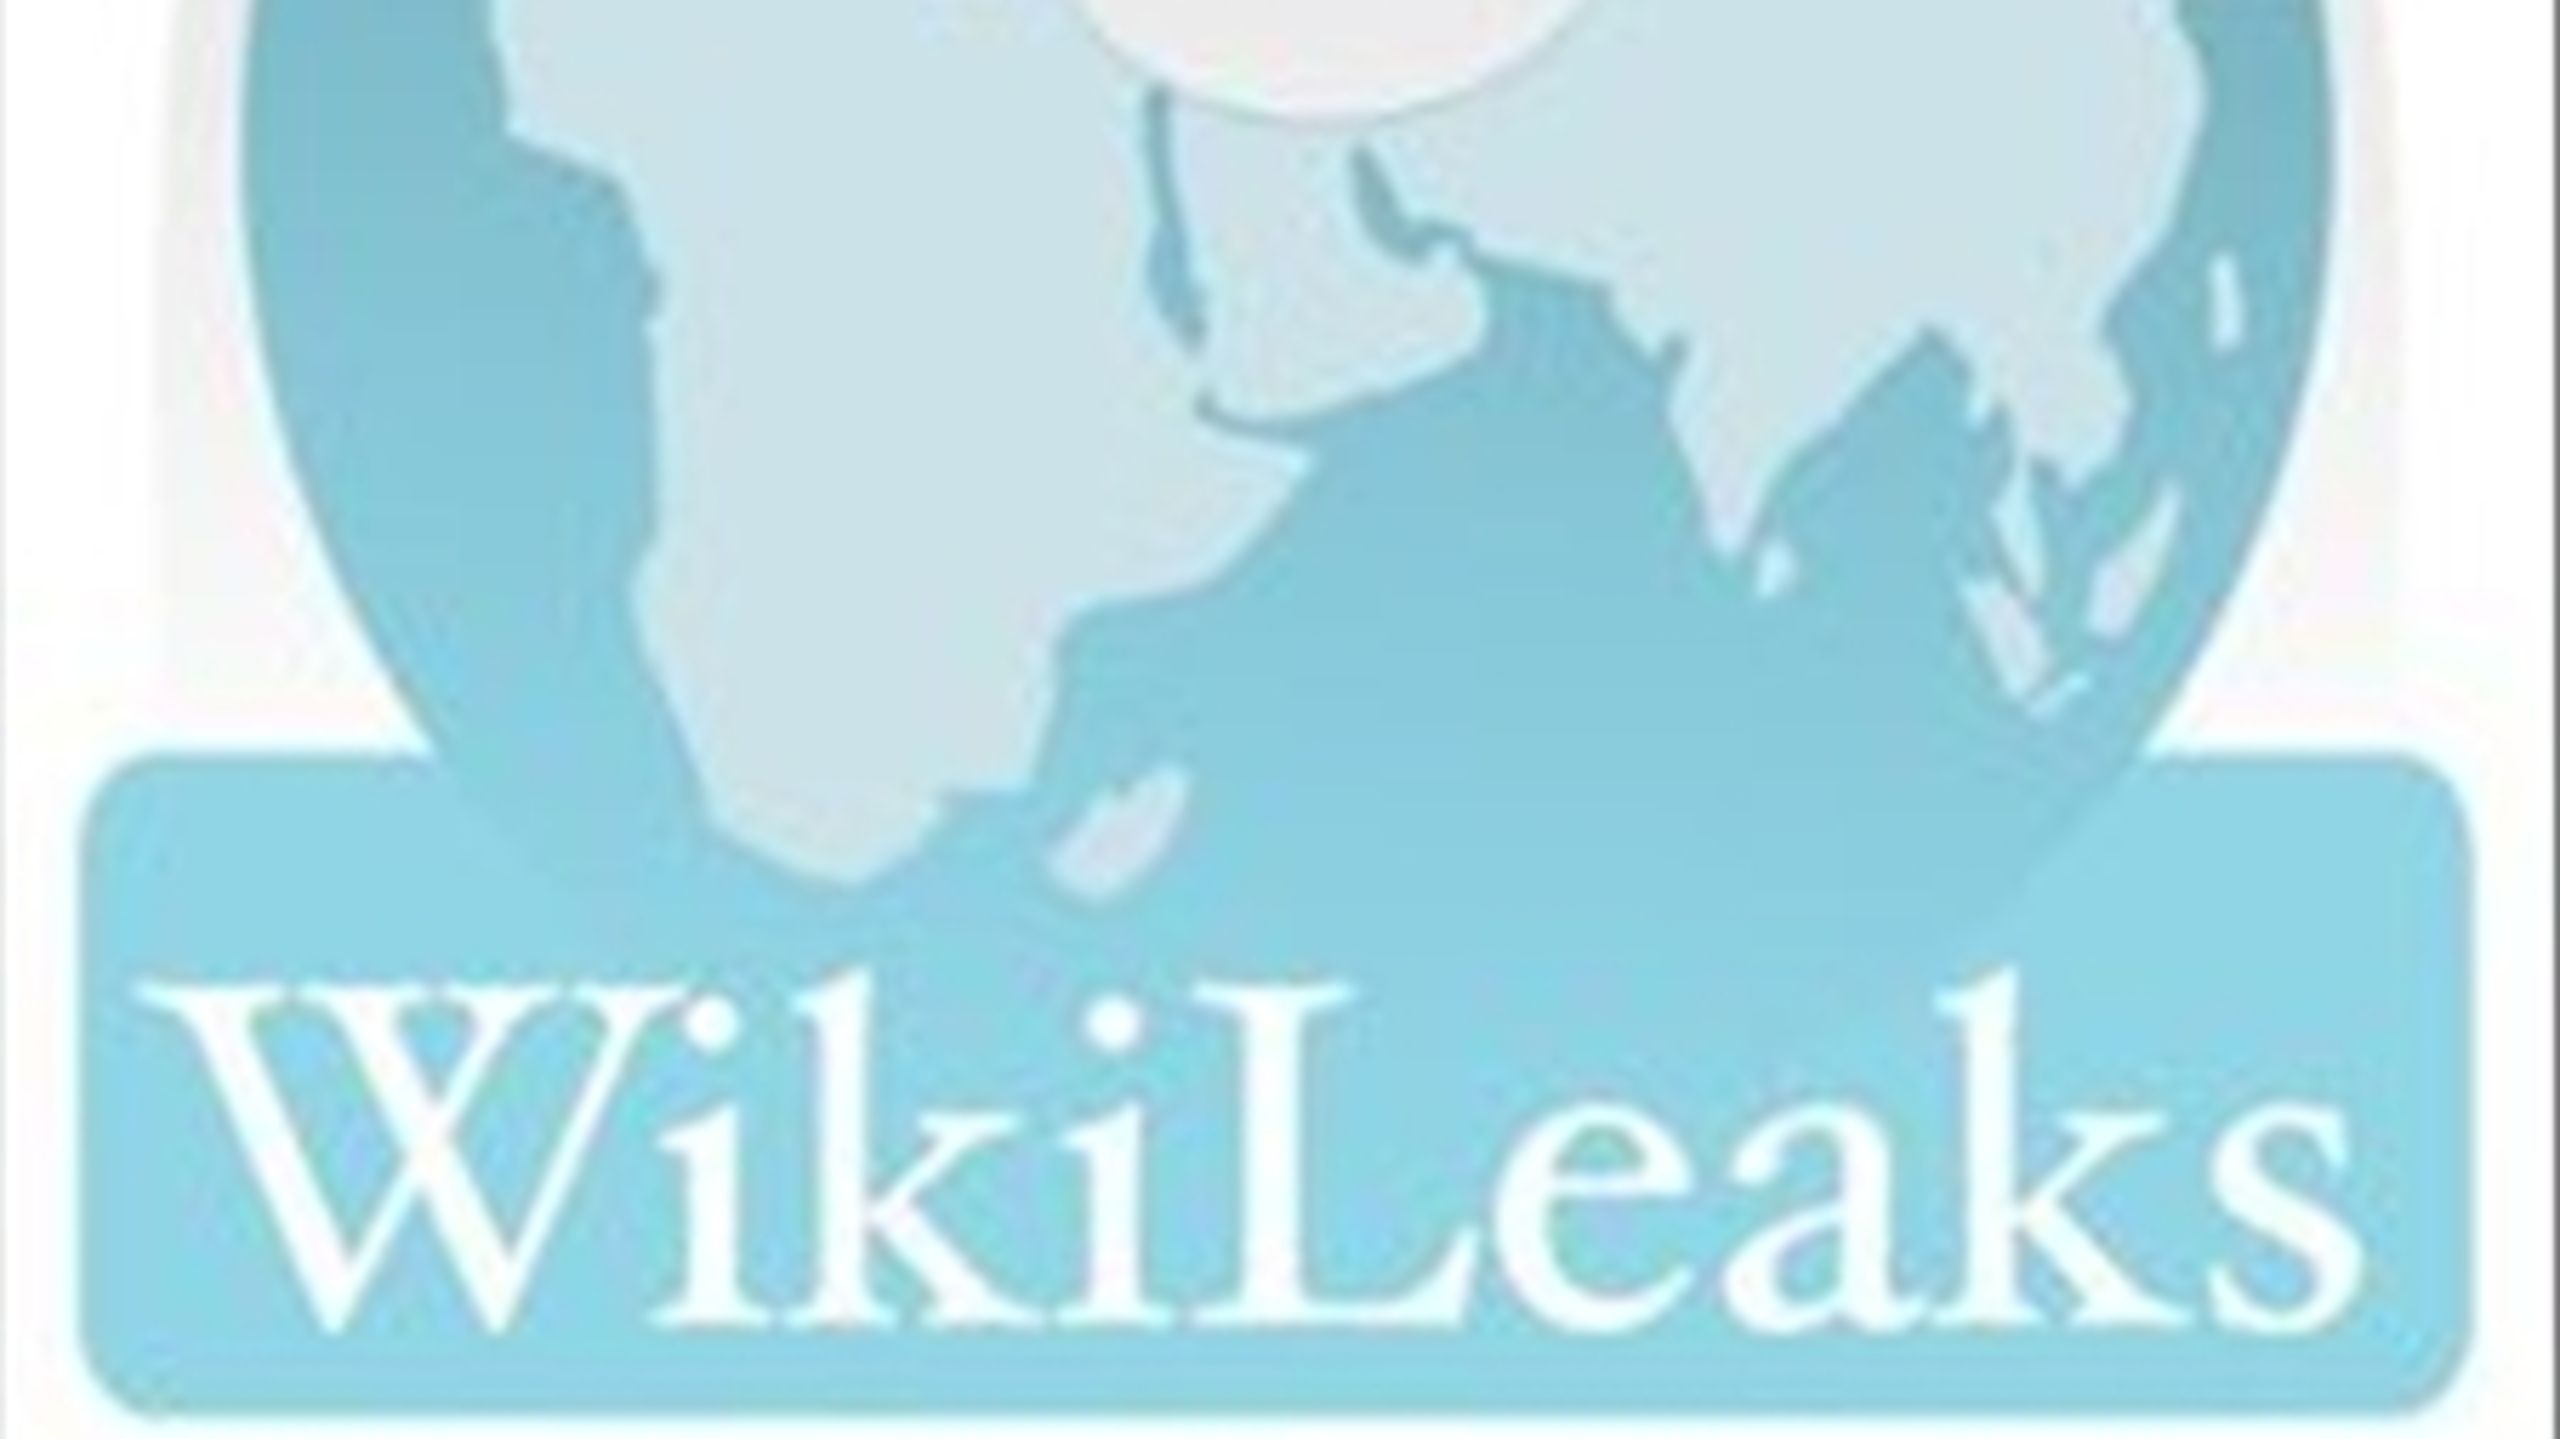 Udenrigstjenesten står overfor store udfordringen, efter over 250,000 dokumenter fra USAs udenrigstjeneste er blevet lækket til Wikileaks.